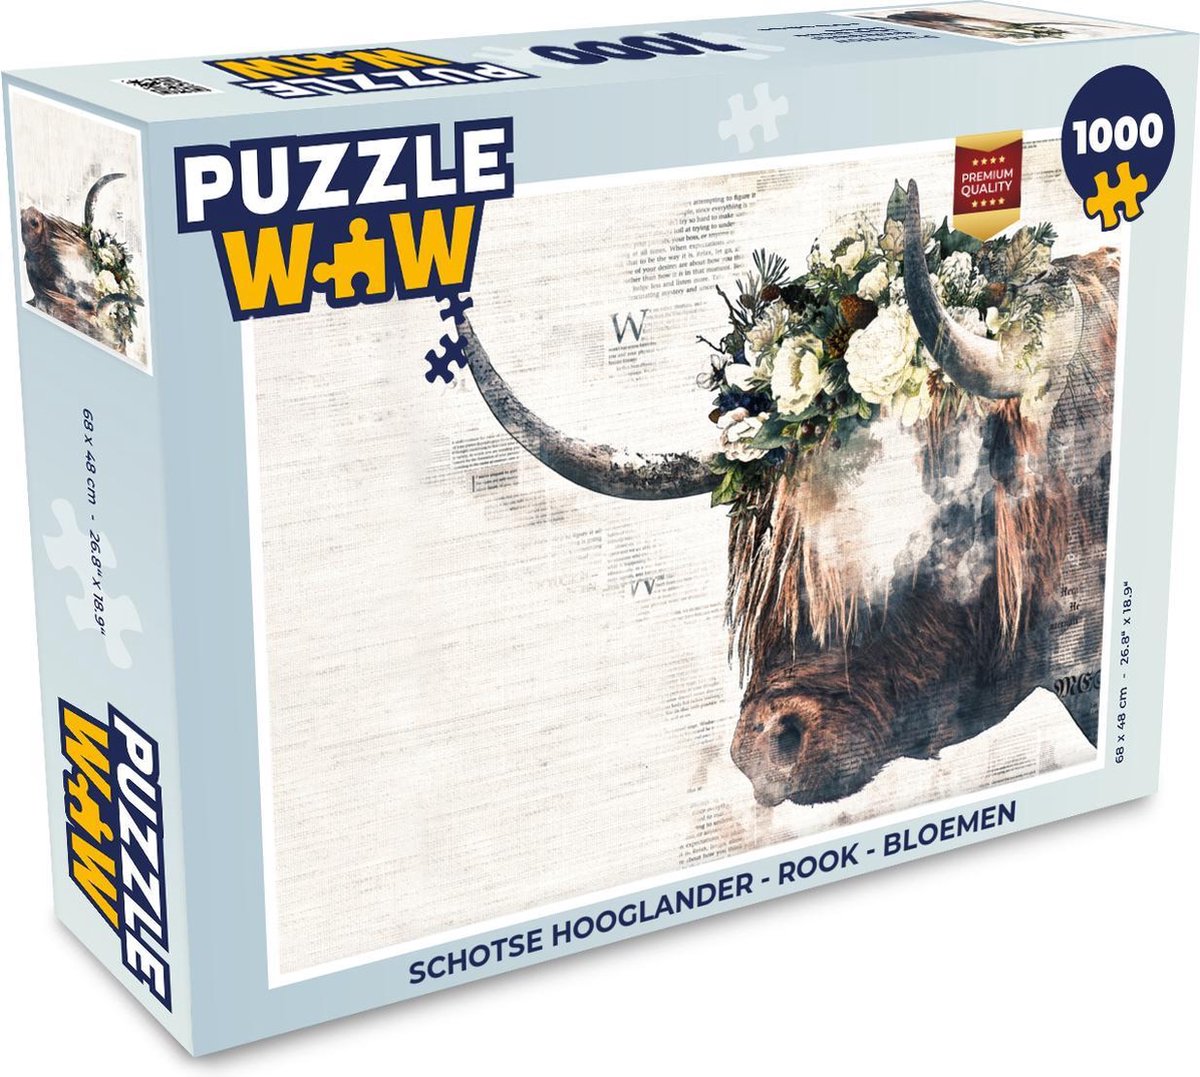 Afbeelding van product PuzzleWow  Puzzel Schotse hooglander - Rook - Bloemen - Legpuzzel - Puzzel 1000 stukjes volwassenen